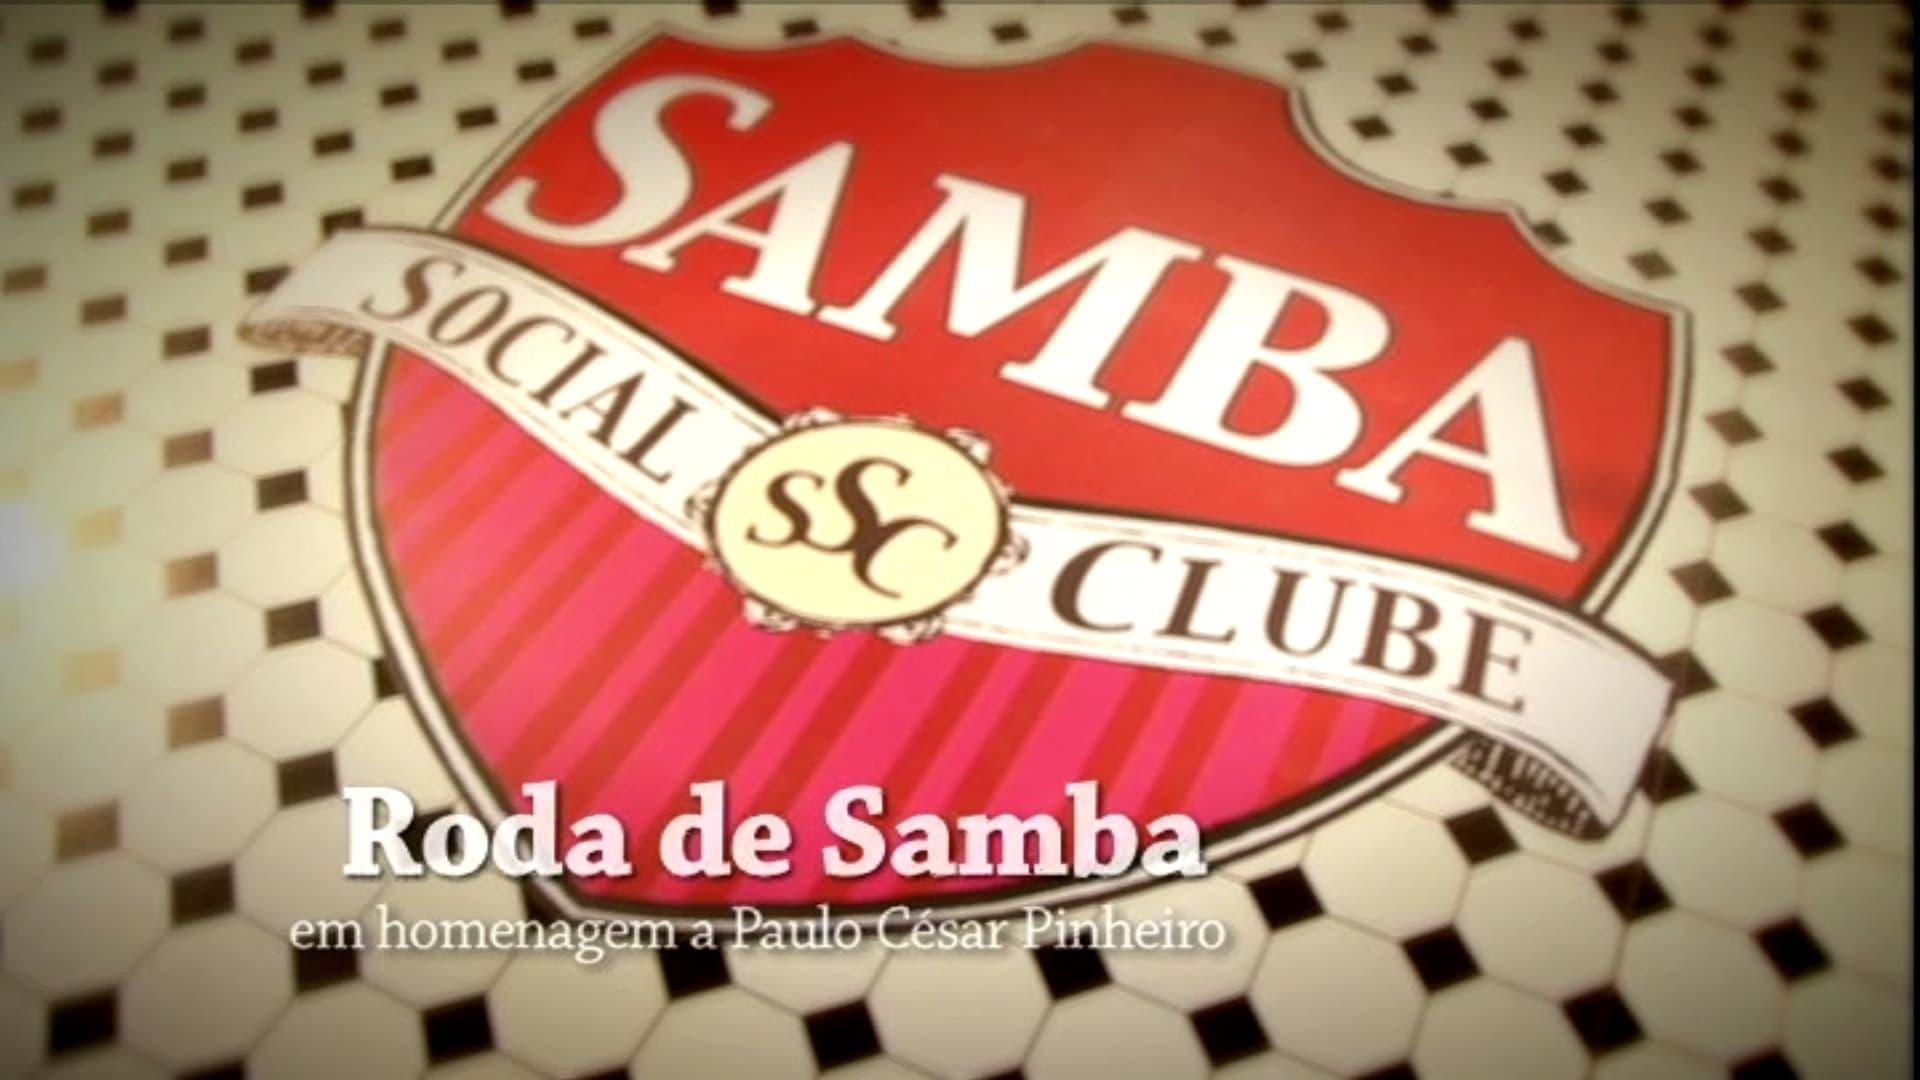 Samba Social Clube - Roda de Samba em Homenagem a Paulo César Pinheiro backdrop